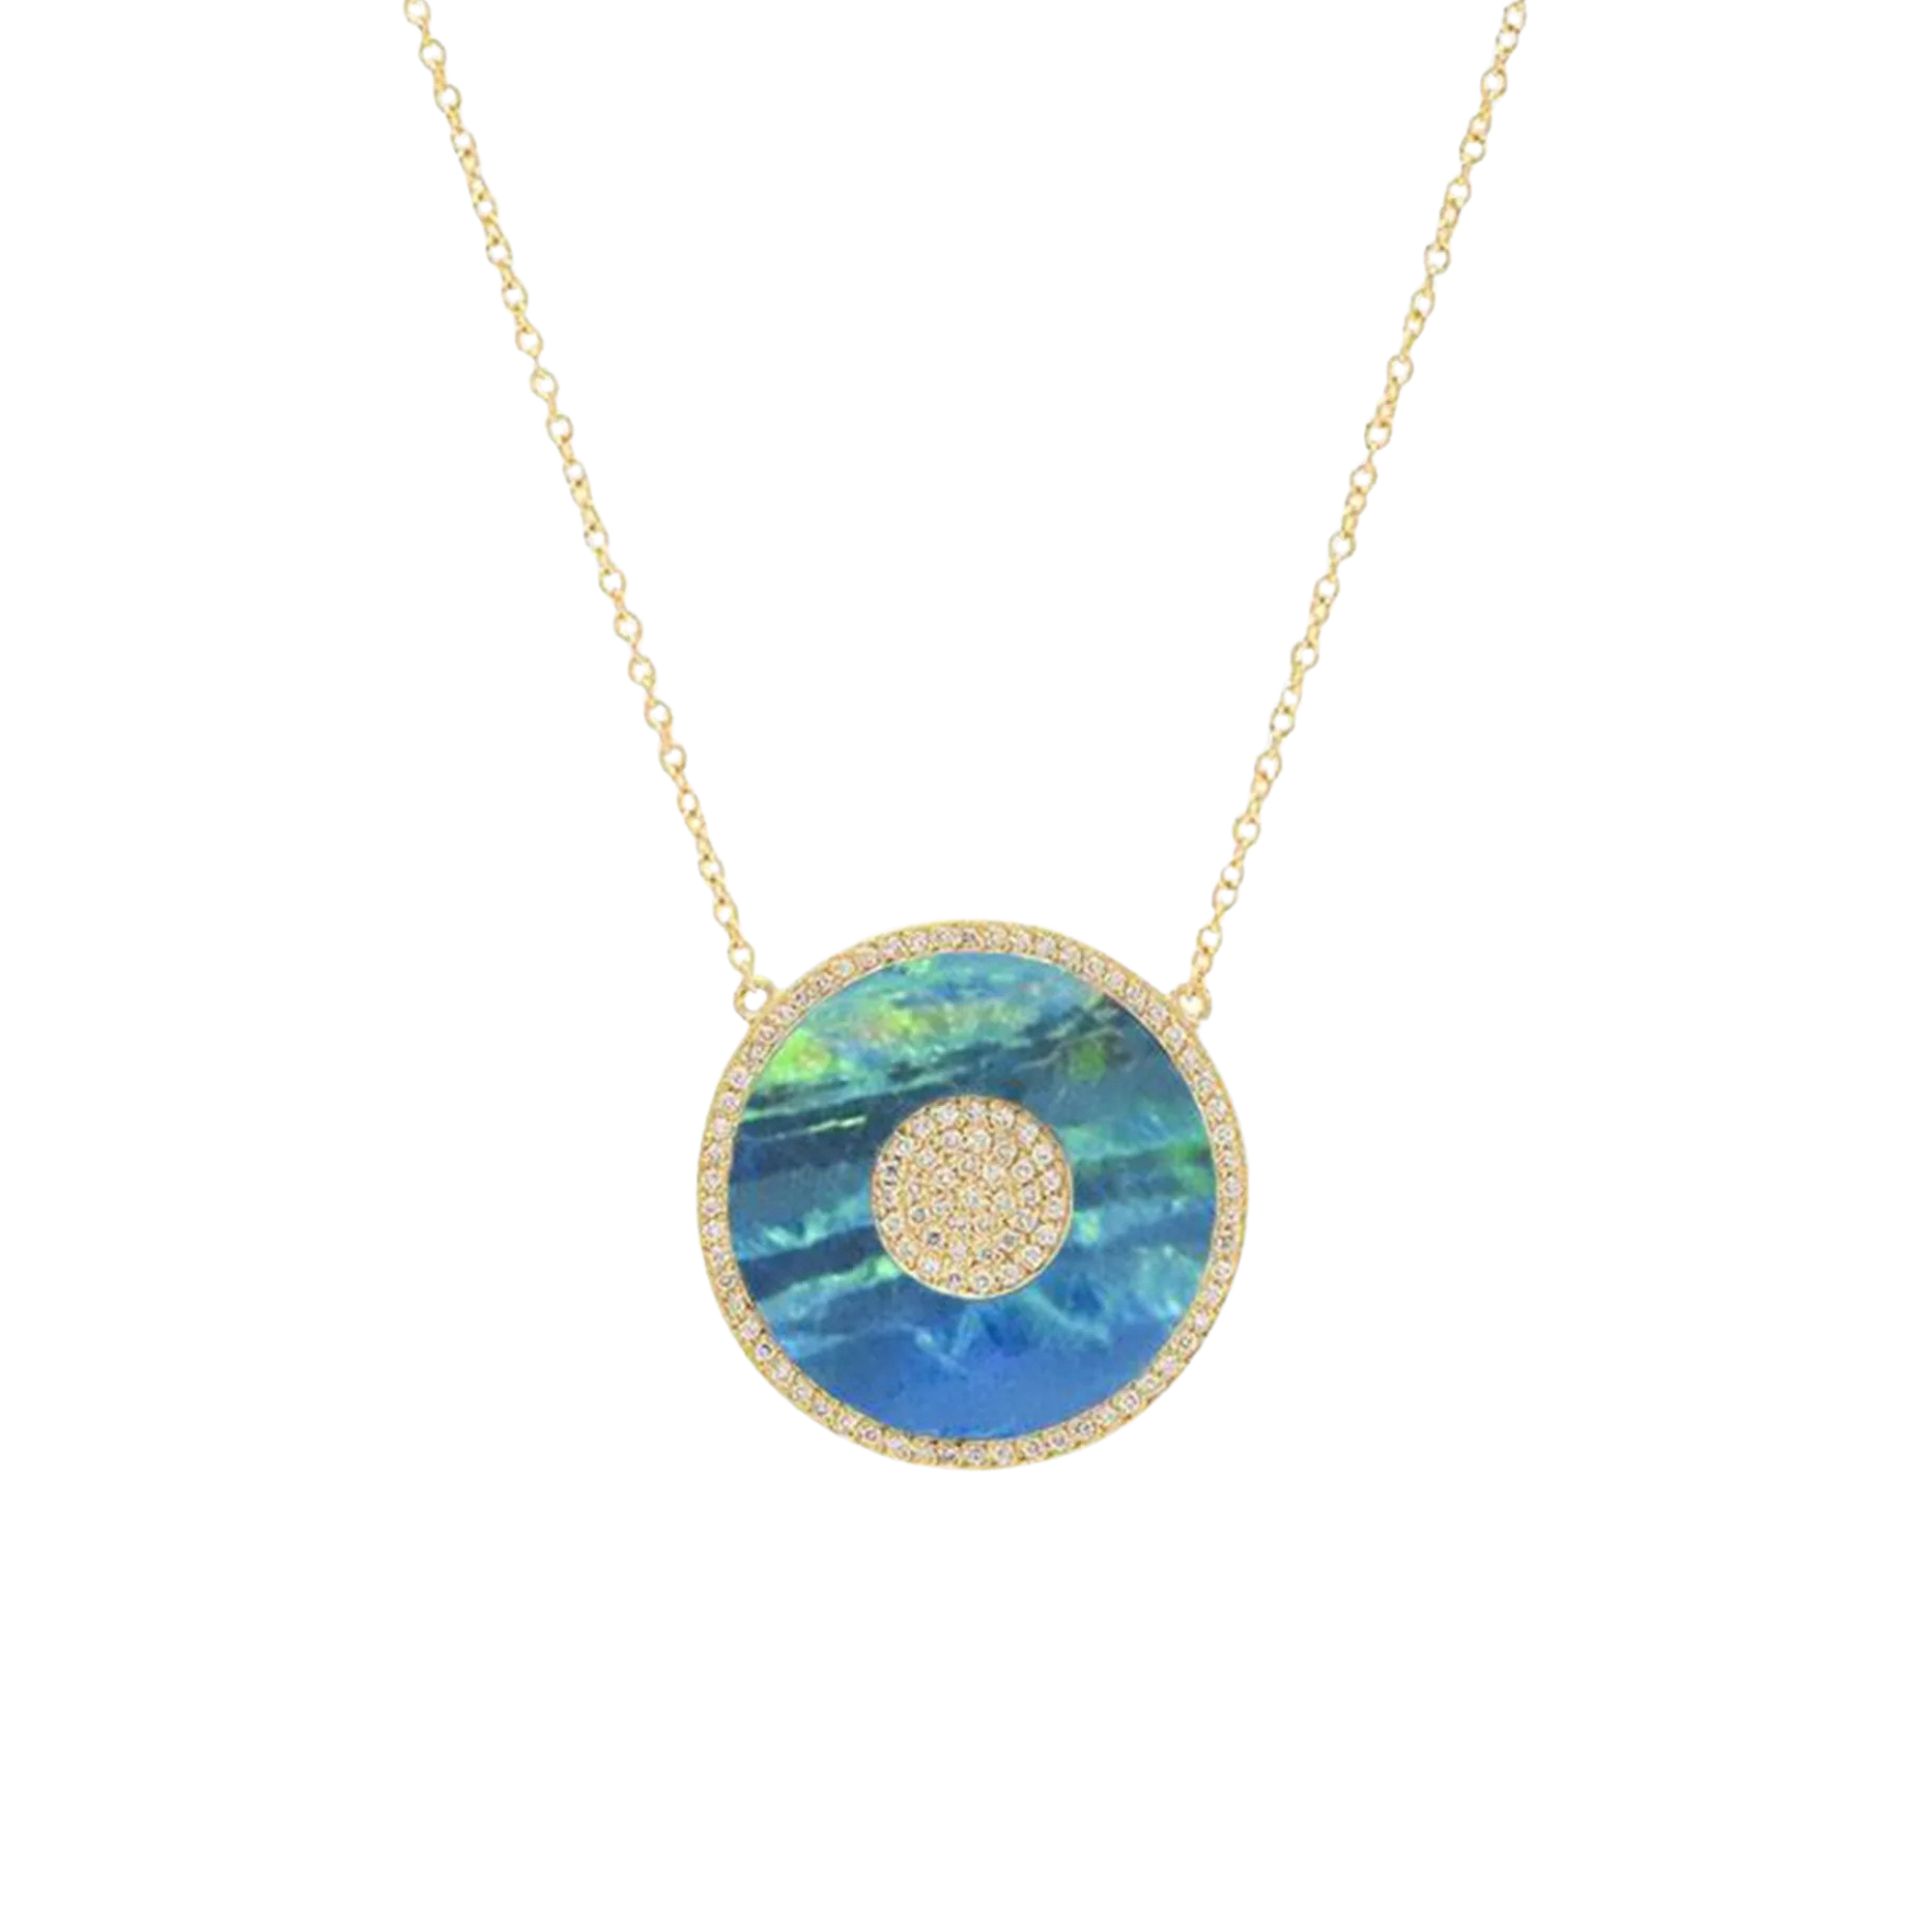 Jennifer Meyer Blur Boulder Opal Evil Eye Necklace with Diamonds, $7,550